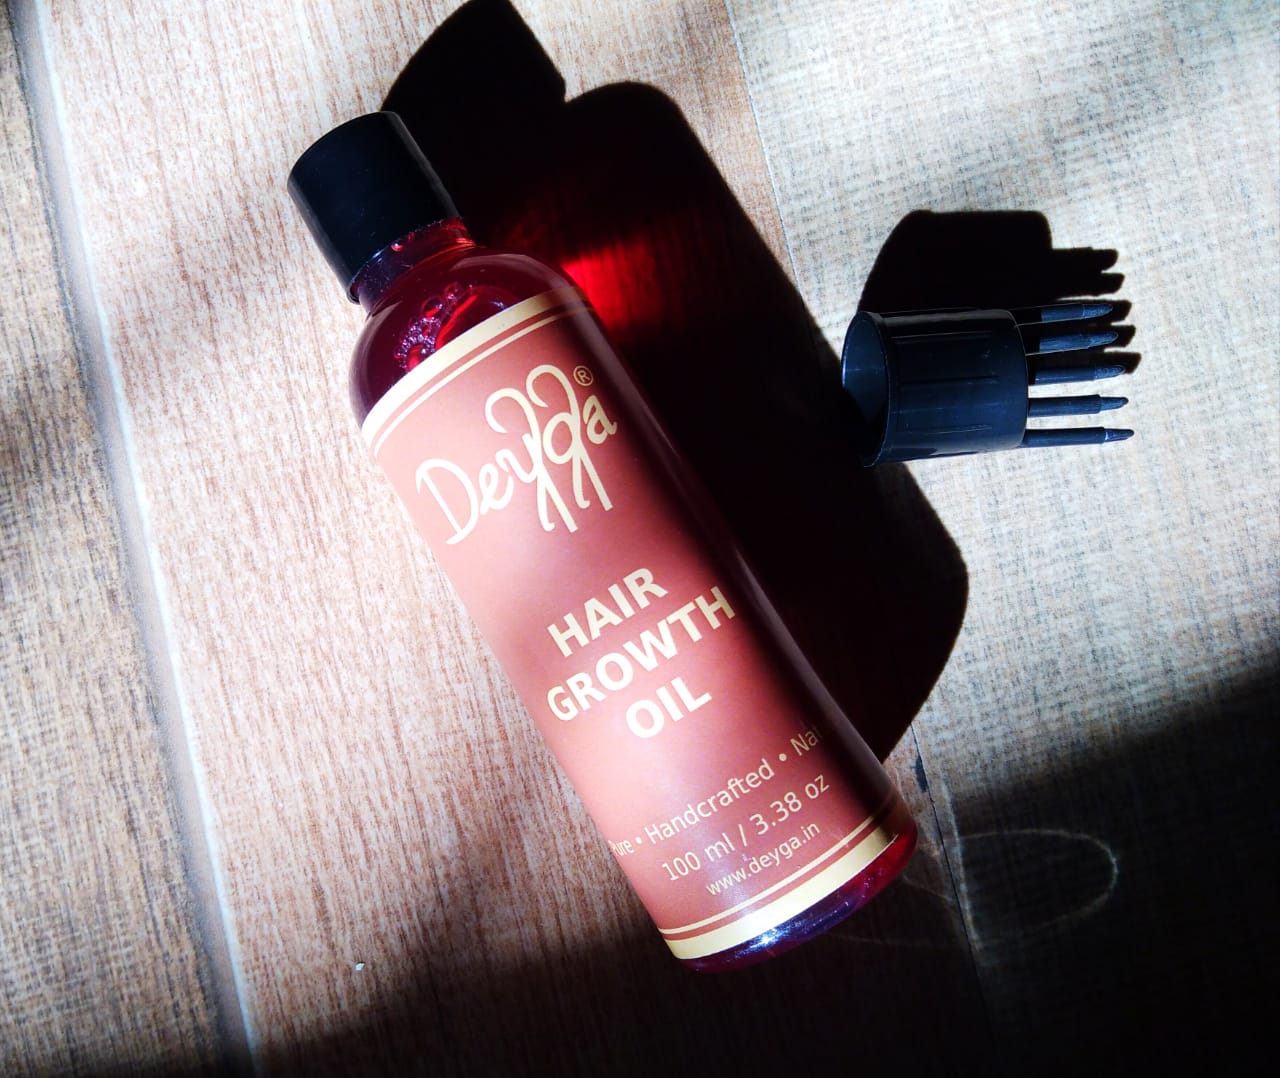 Deyga Hair Serum (Liquid Gold) and Deyga Hair Growth Oil Review!